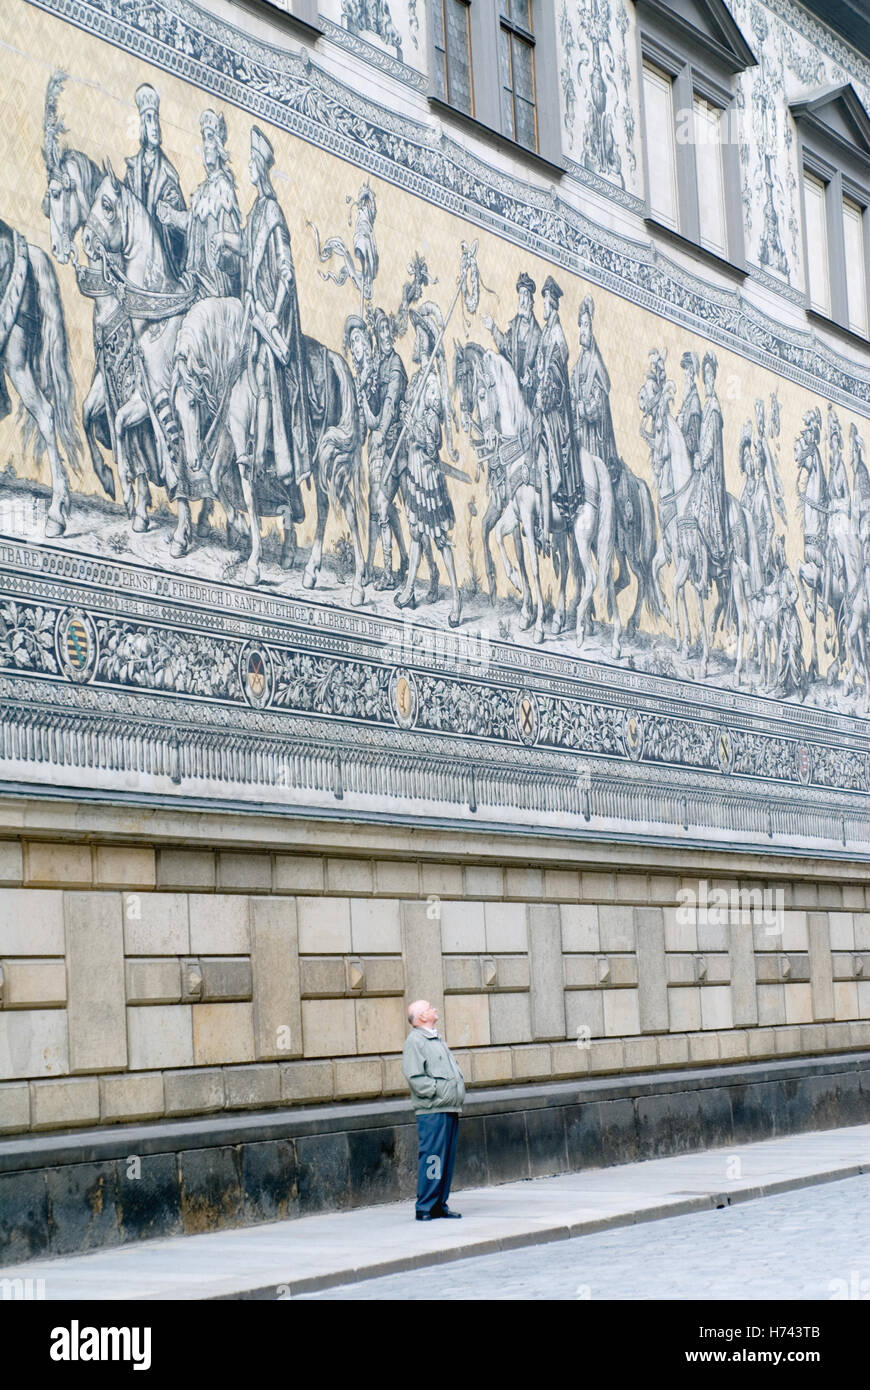 Wandbild "Fuerstenzug", die Fürsten Prozession an der Fassade der Zugehörigkeit zu den Stallhof Langer Gang Mews in der Stockfoto